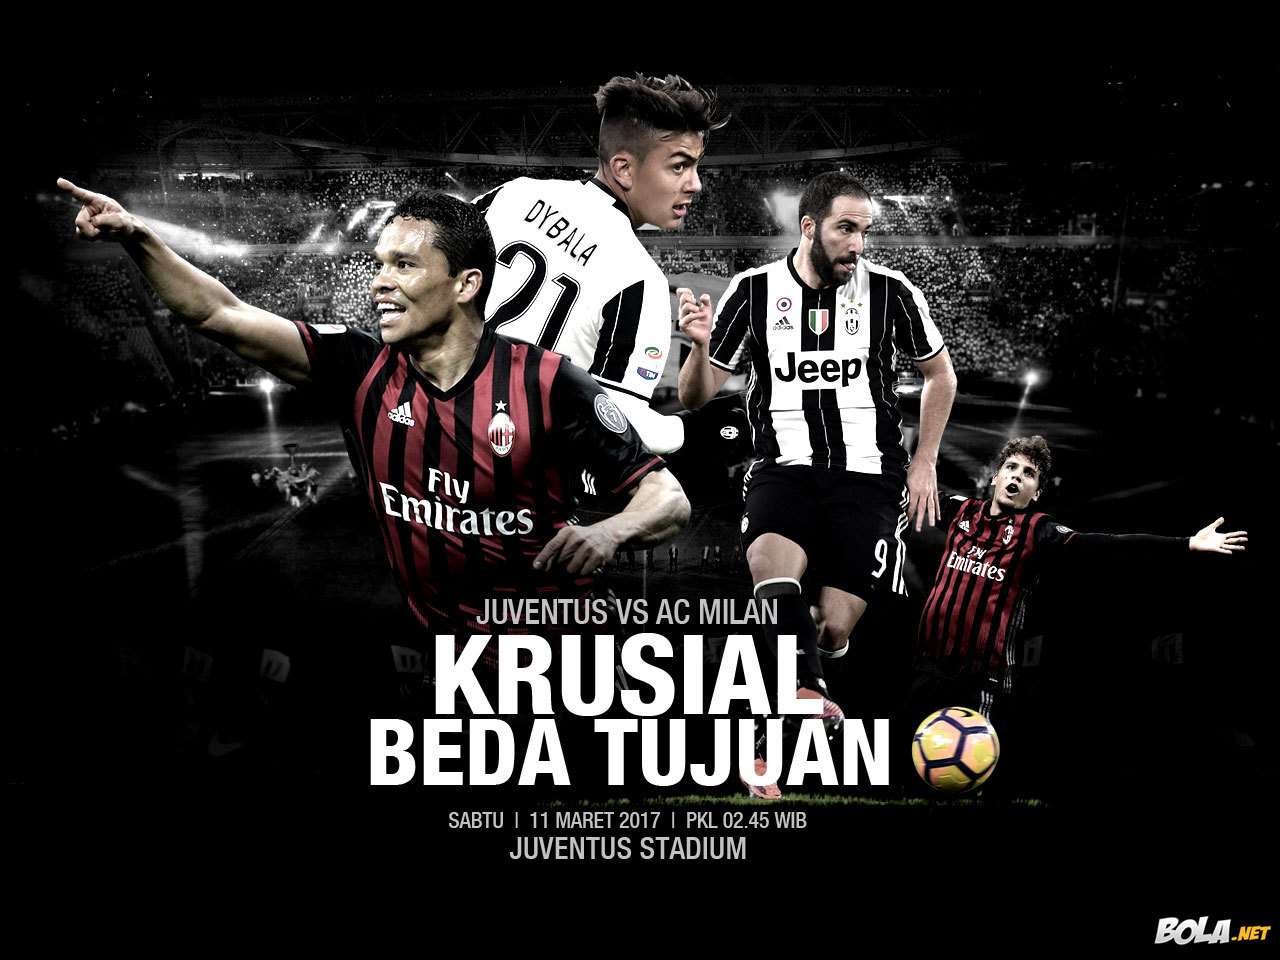 Deskripsi : Wallpaper Juventus Vs Ac Milan, size: 1280x960